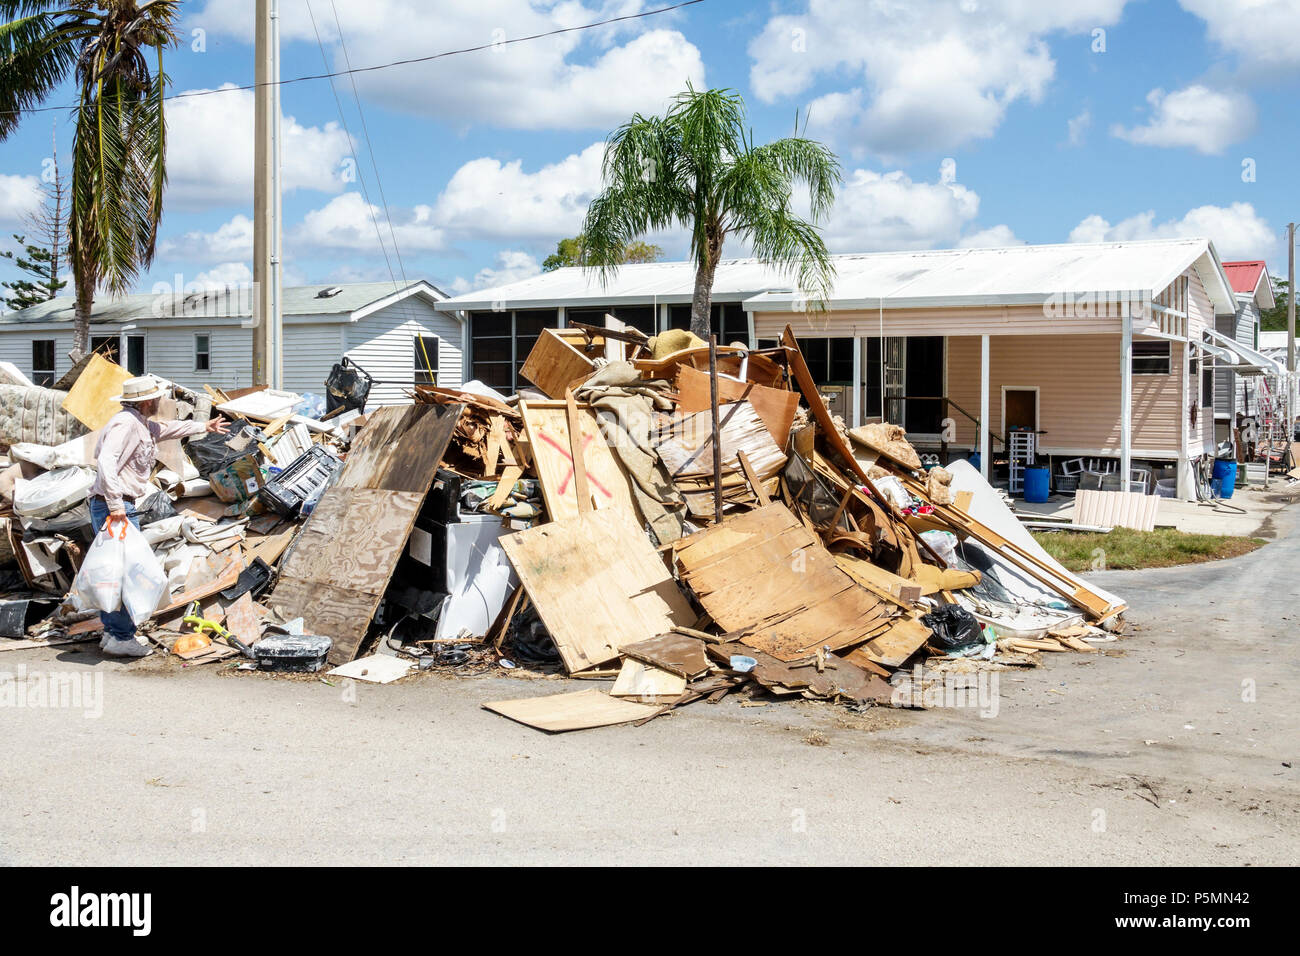 Everglades City Florida, nach dem Hurrikan Irma, Häuser Häuser Wohnungen, Sturm Disaster Recovery Cleanup, Flutwelle Schäden Zerstörung Nachwirkungen, Müll, de Stockfoto